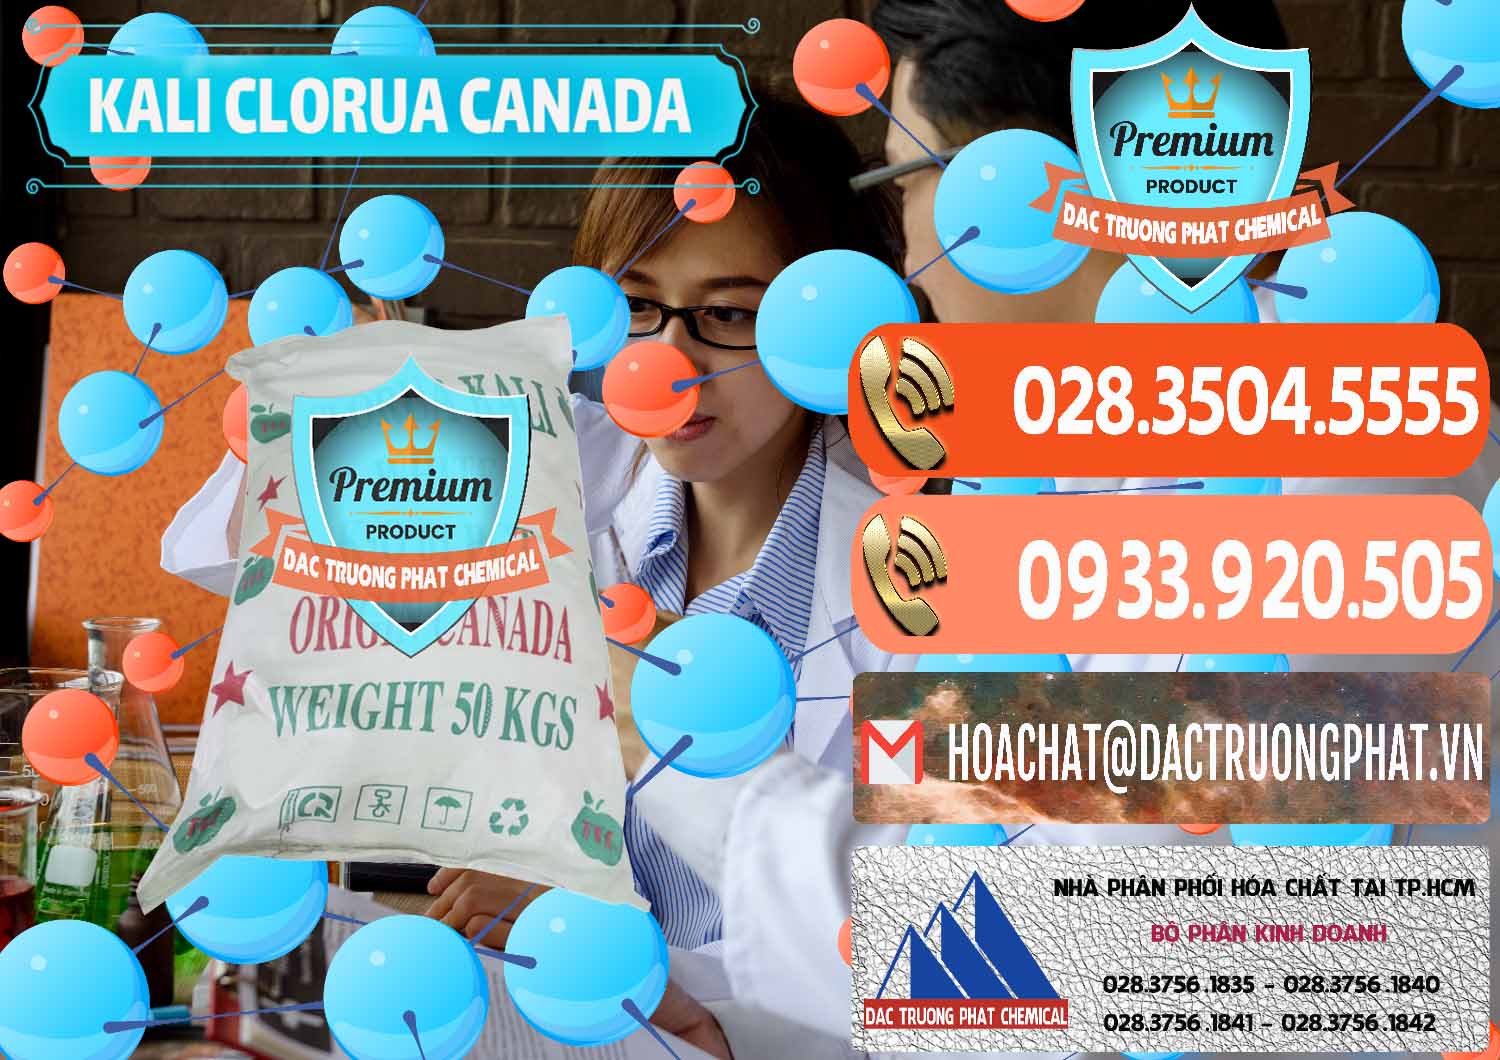 Đơn vị chuyên bán và phân phối KCL – Kali Clorua Trắng Canada - 0437 - Cung cấp và phân phối hóa chất tại TP.HCM - hoachatmientay.com